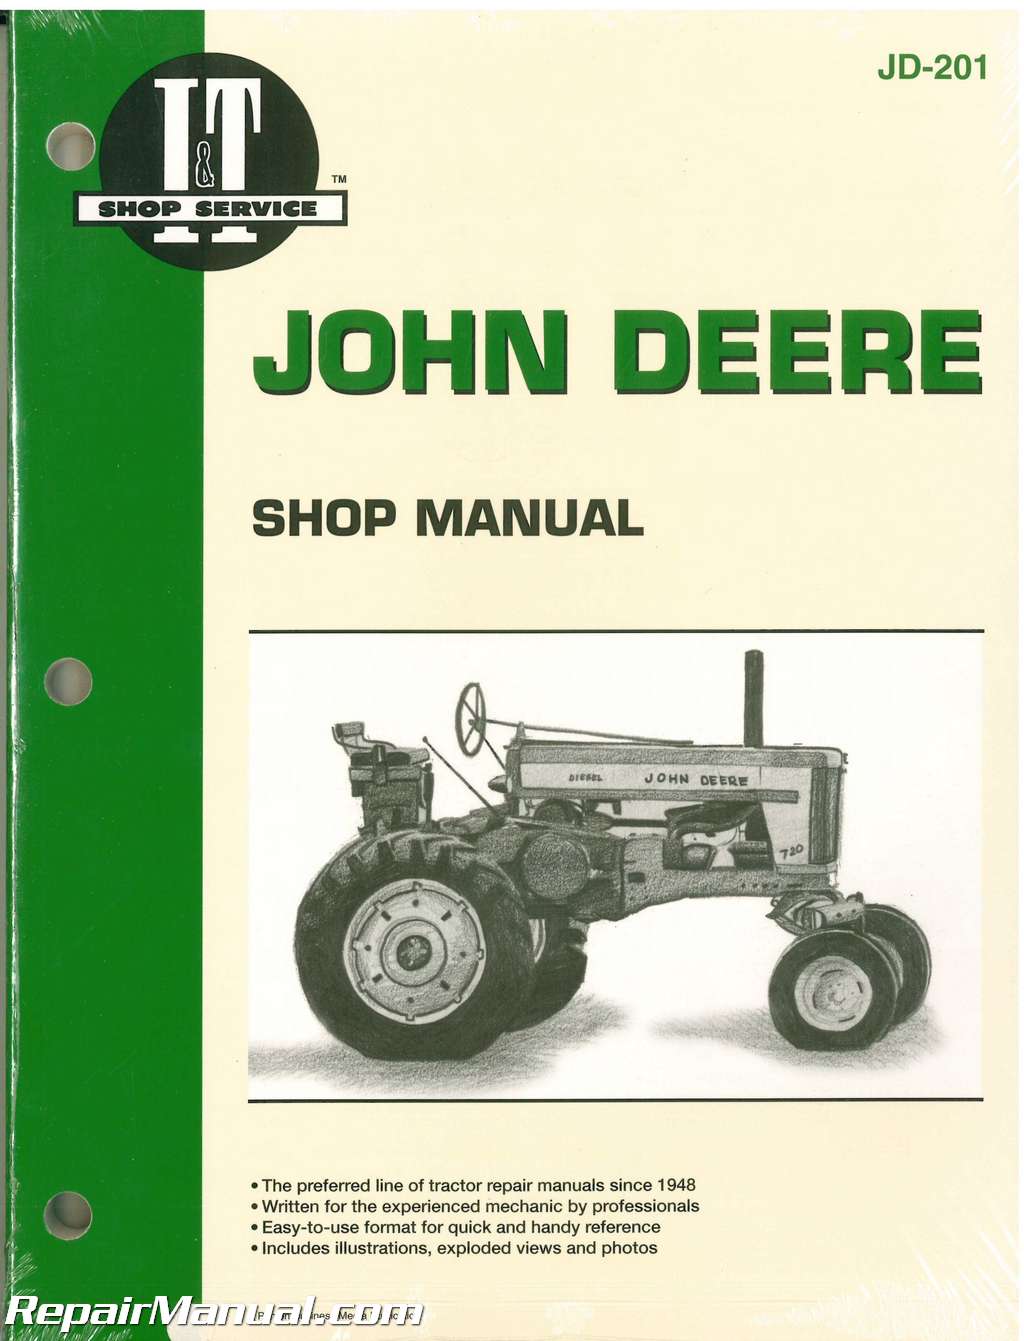 John Deere Repair Manual 5103 Wiring Diagram,Deere ...